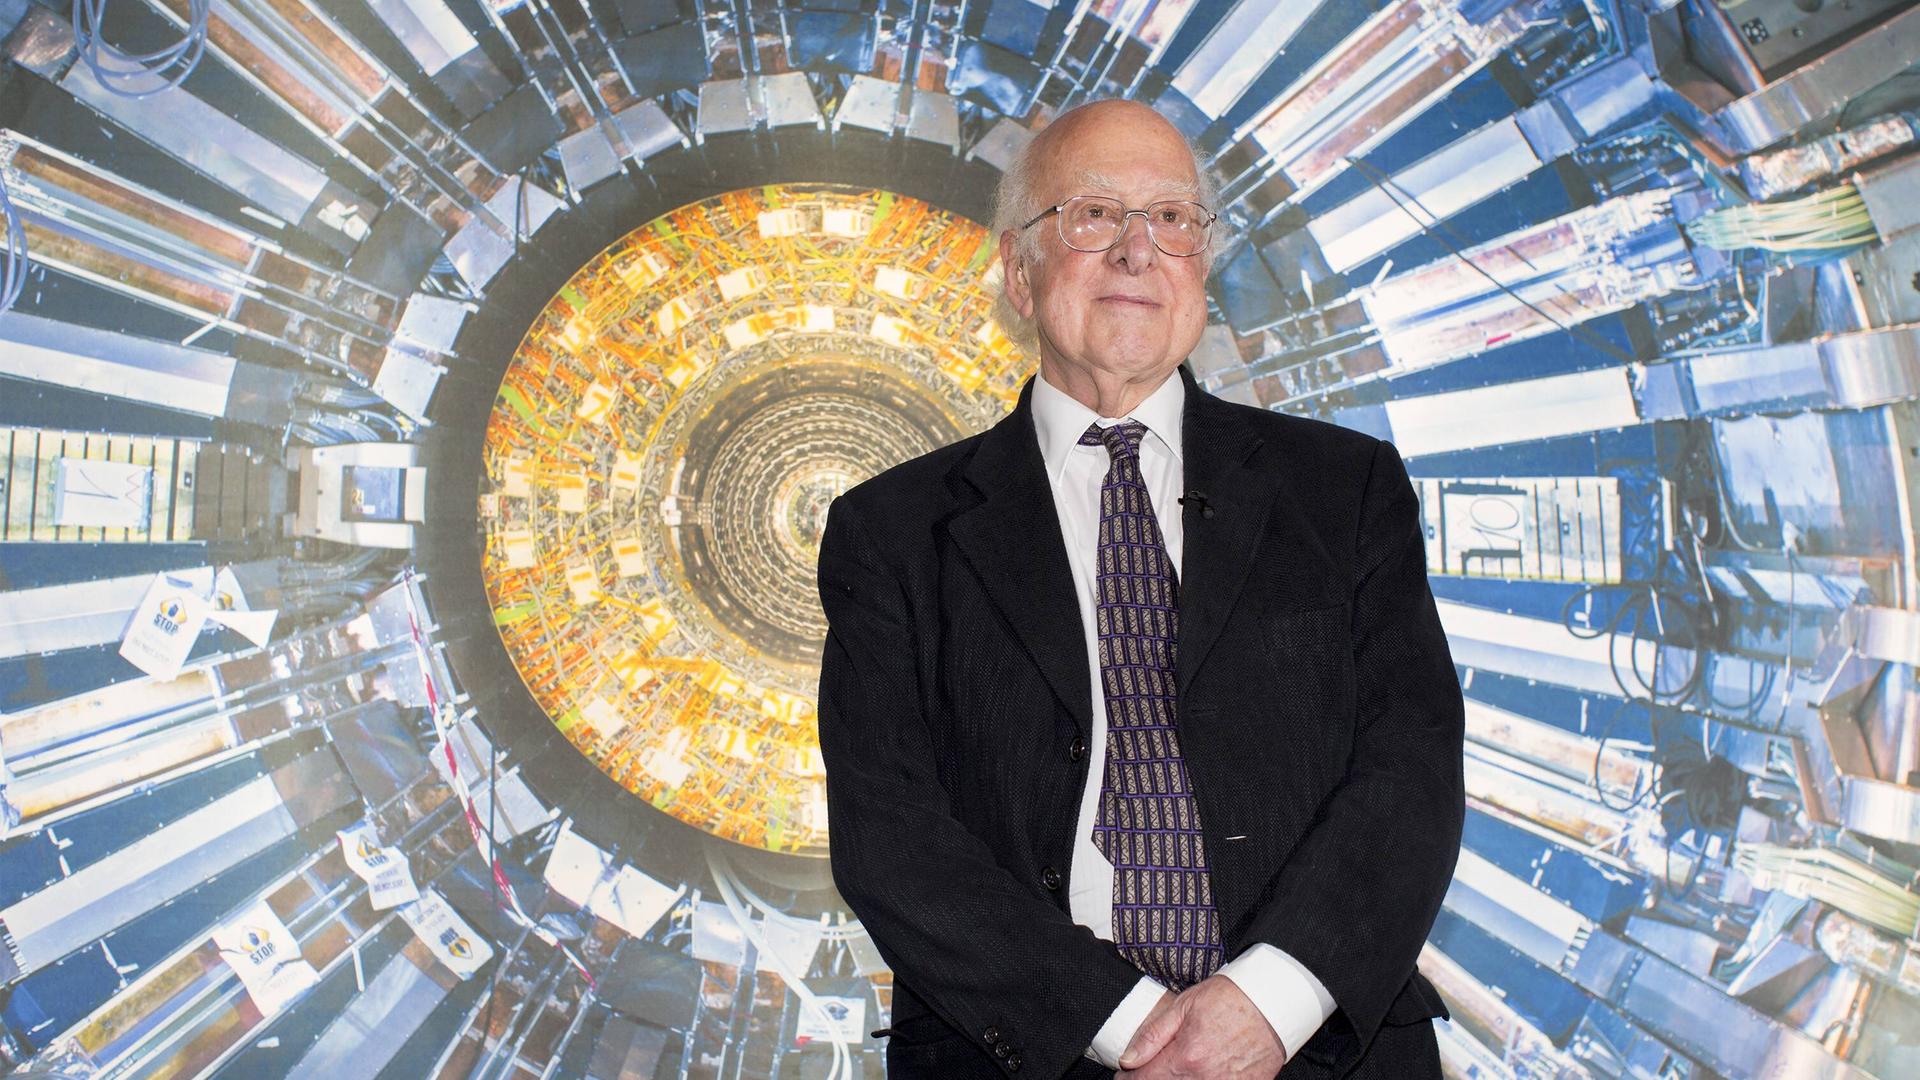 Der Nobelpreisträger Peter Higgs steht vor einer Abbildung des Forschungszentrums CERN bei einer Museumseröffnung in London.